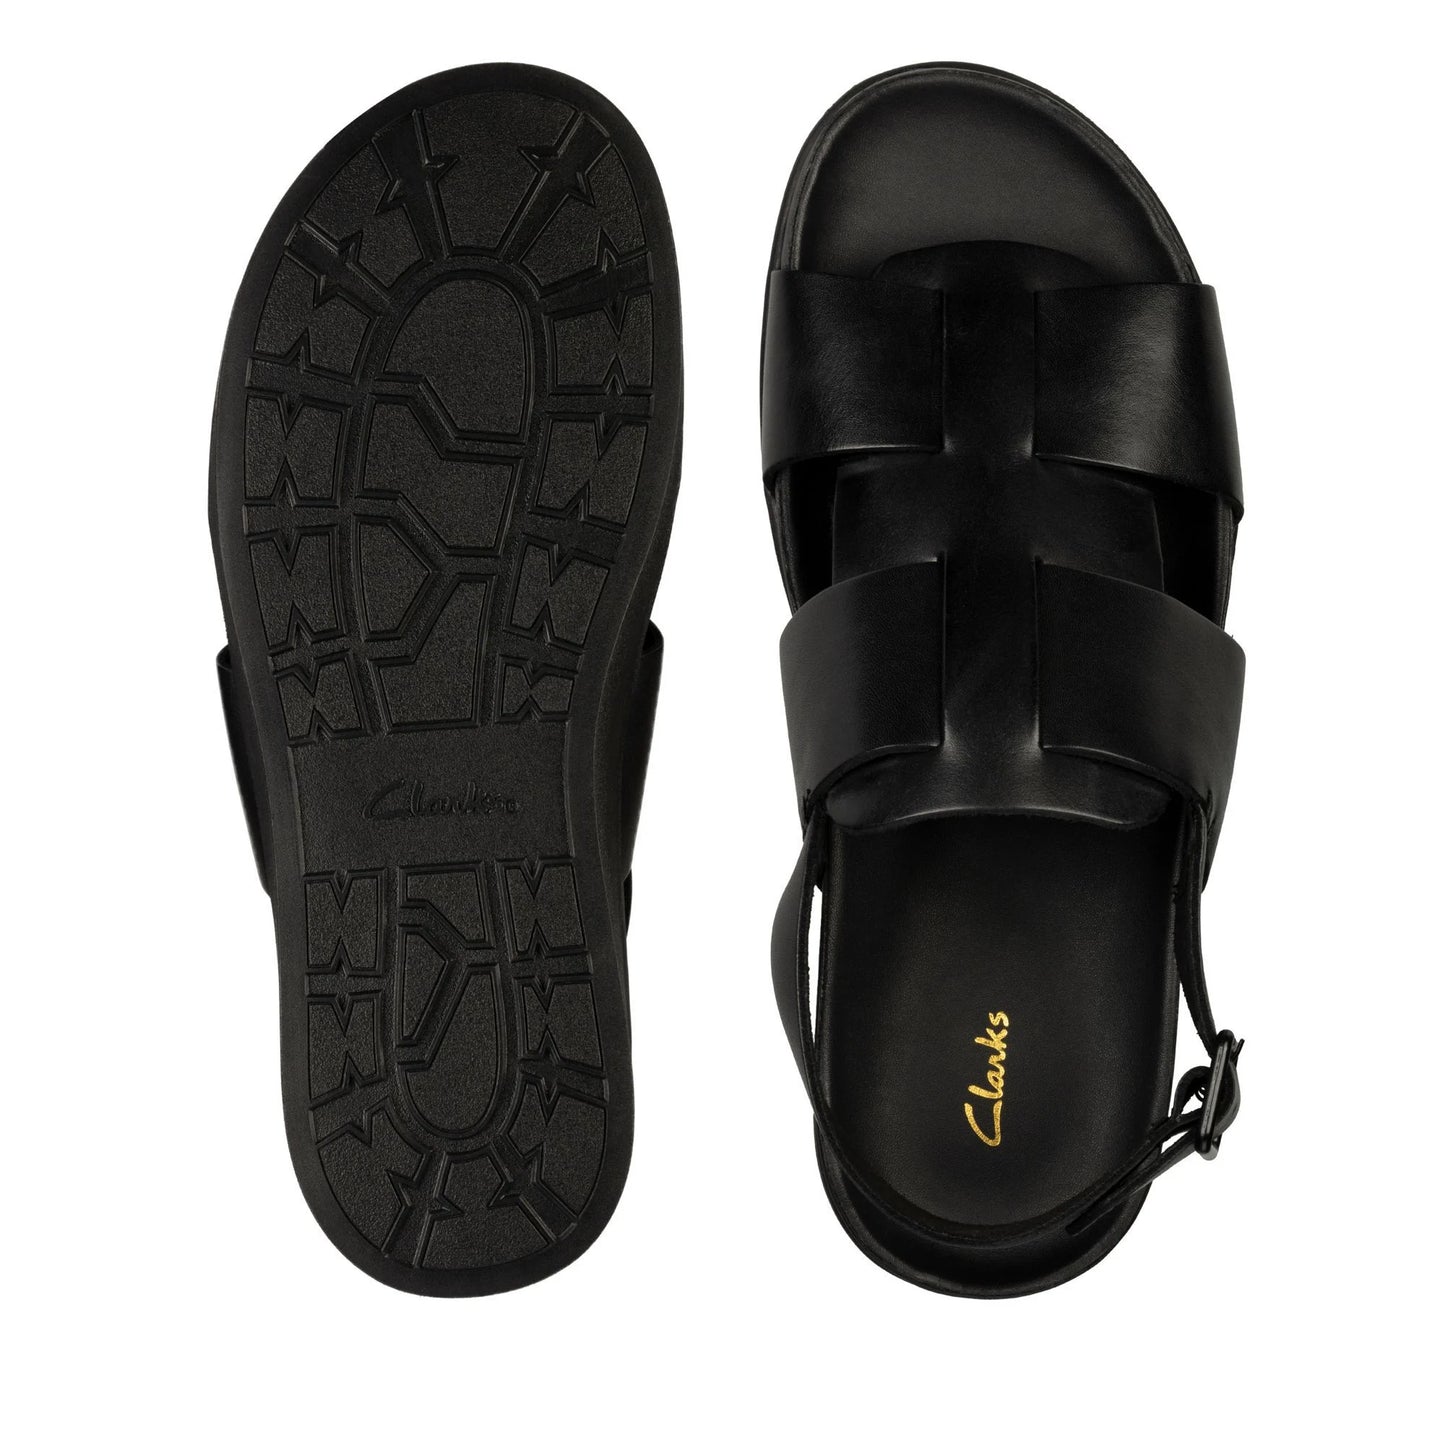 Clarks Sunder Strap Black Sandals